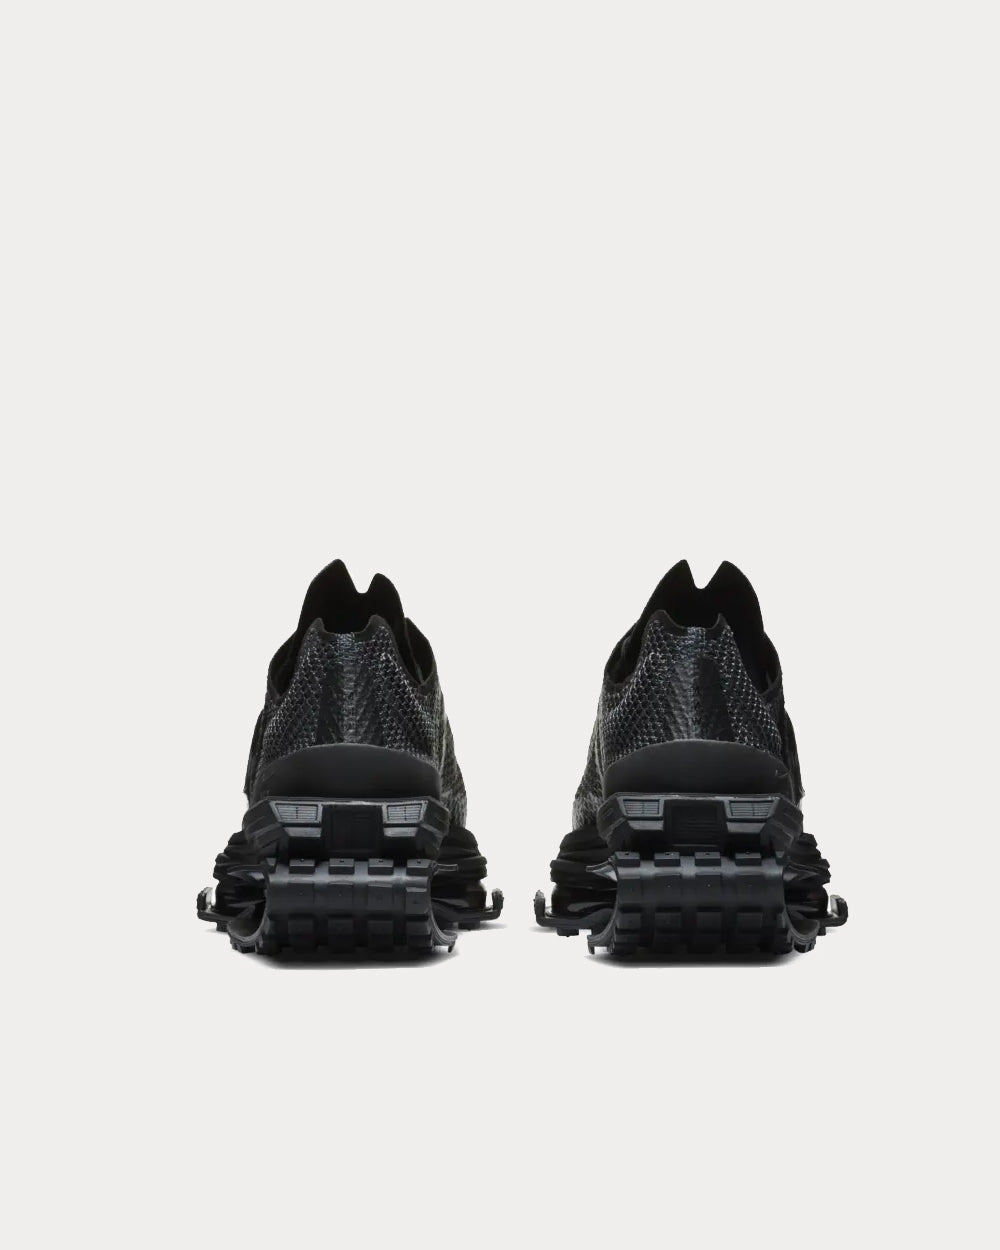 Nike x MMW - Zoom 004 Black Low Top Sneakers